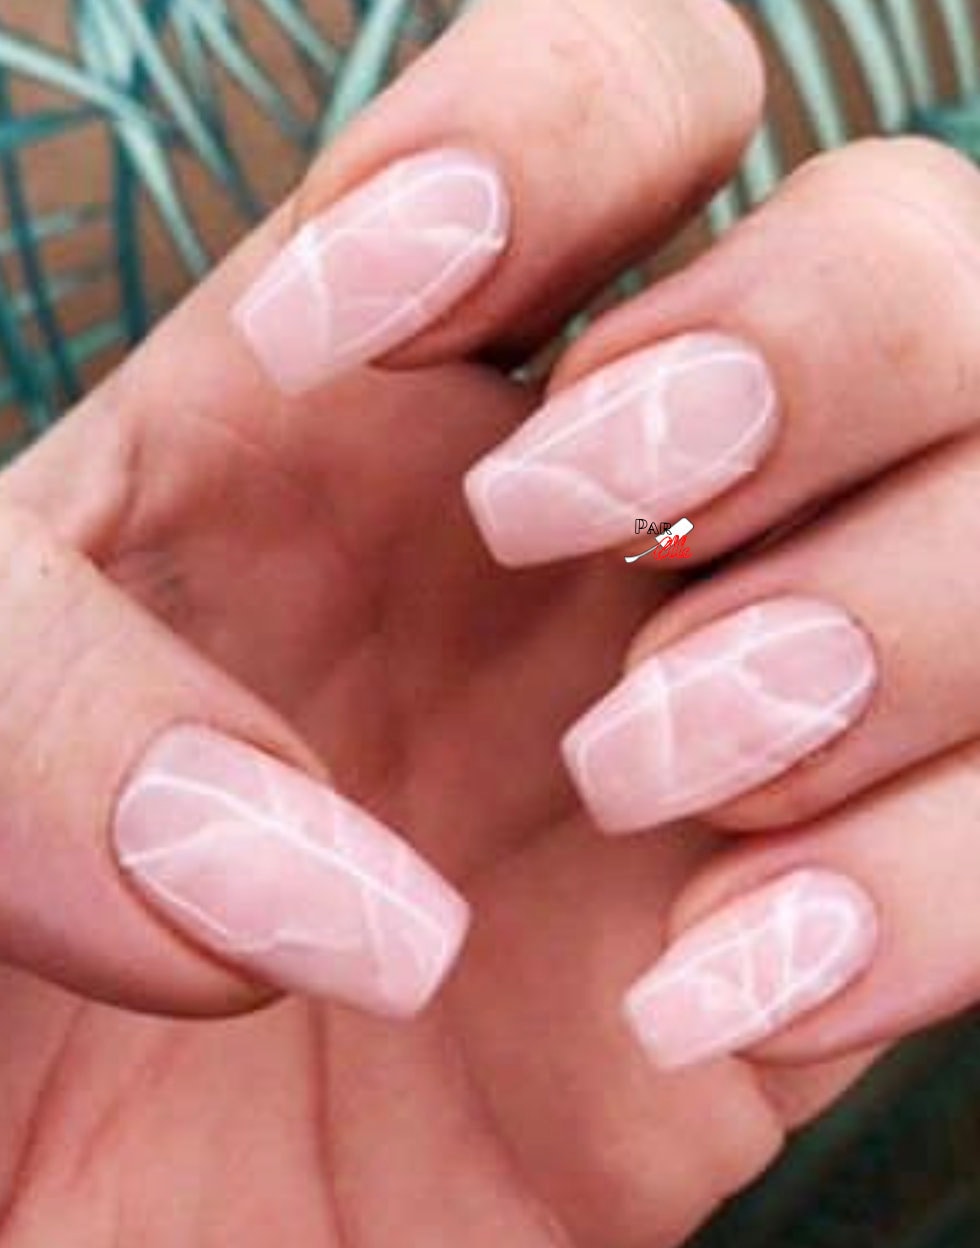 Pink Nails Quartz Nails Pink Marble Press on Nails Fake Nails Set of 20 Glue on Nails Instagram Nails Custom Nails